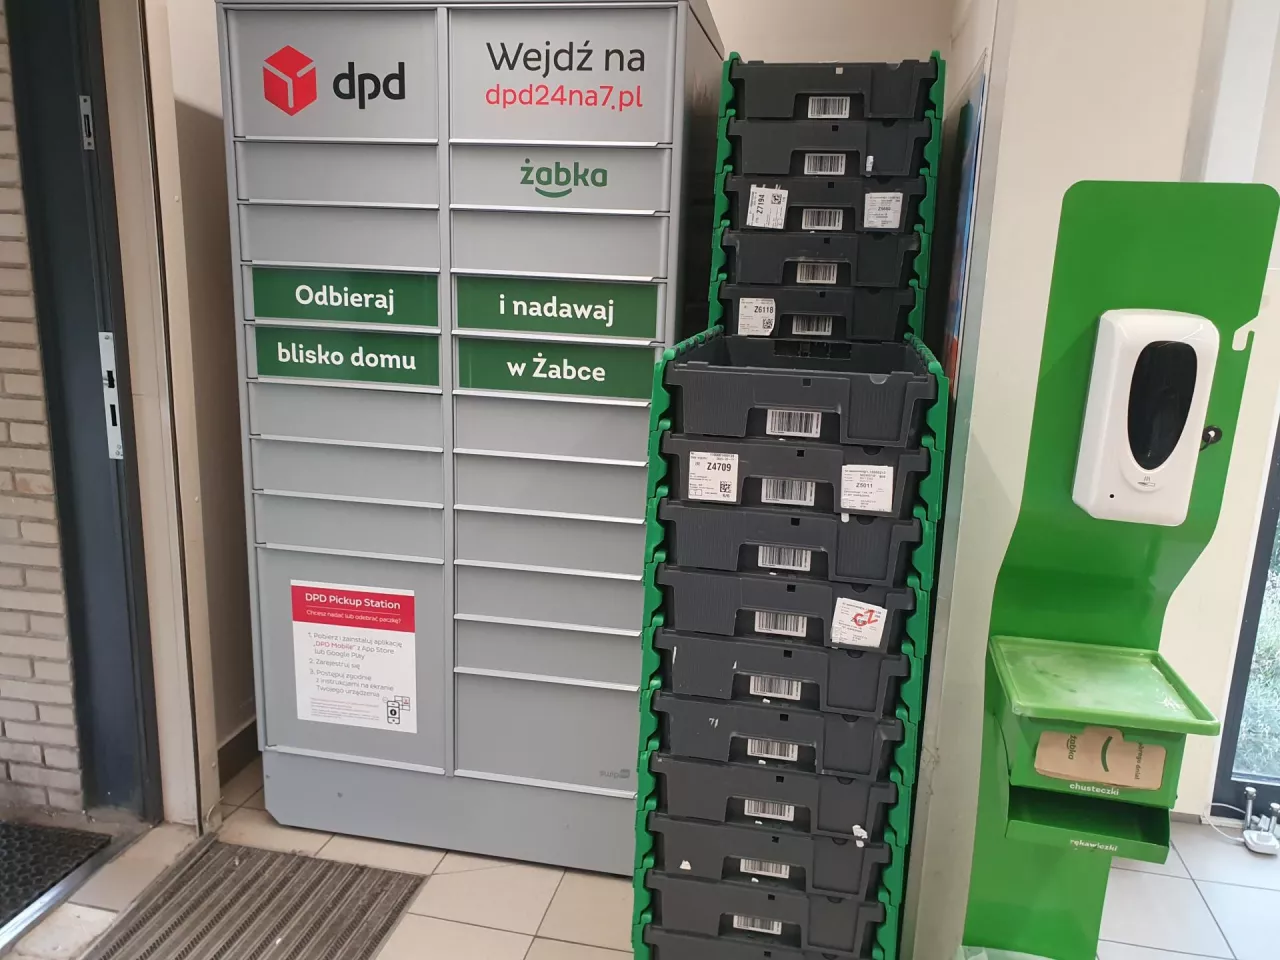 &lt;p&gt;Automat paczkowy DPD w sklepie sieci Żabka (fot. wiadomoscihandlowe.pl/PJ)&lt;/p&gt;